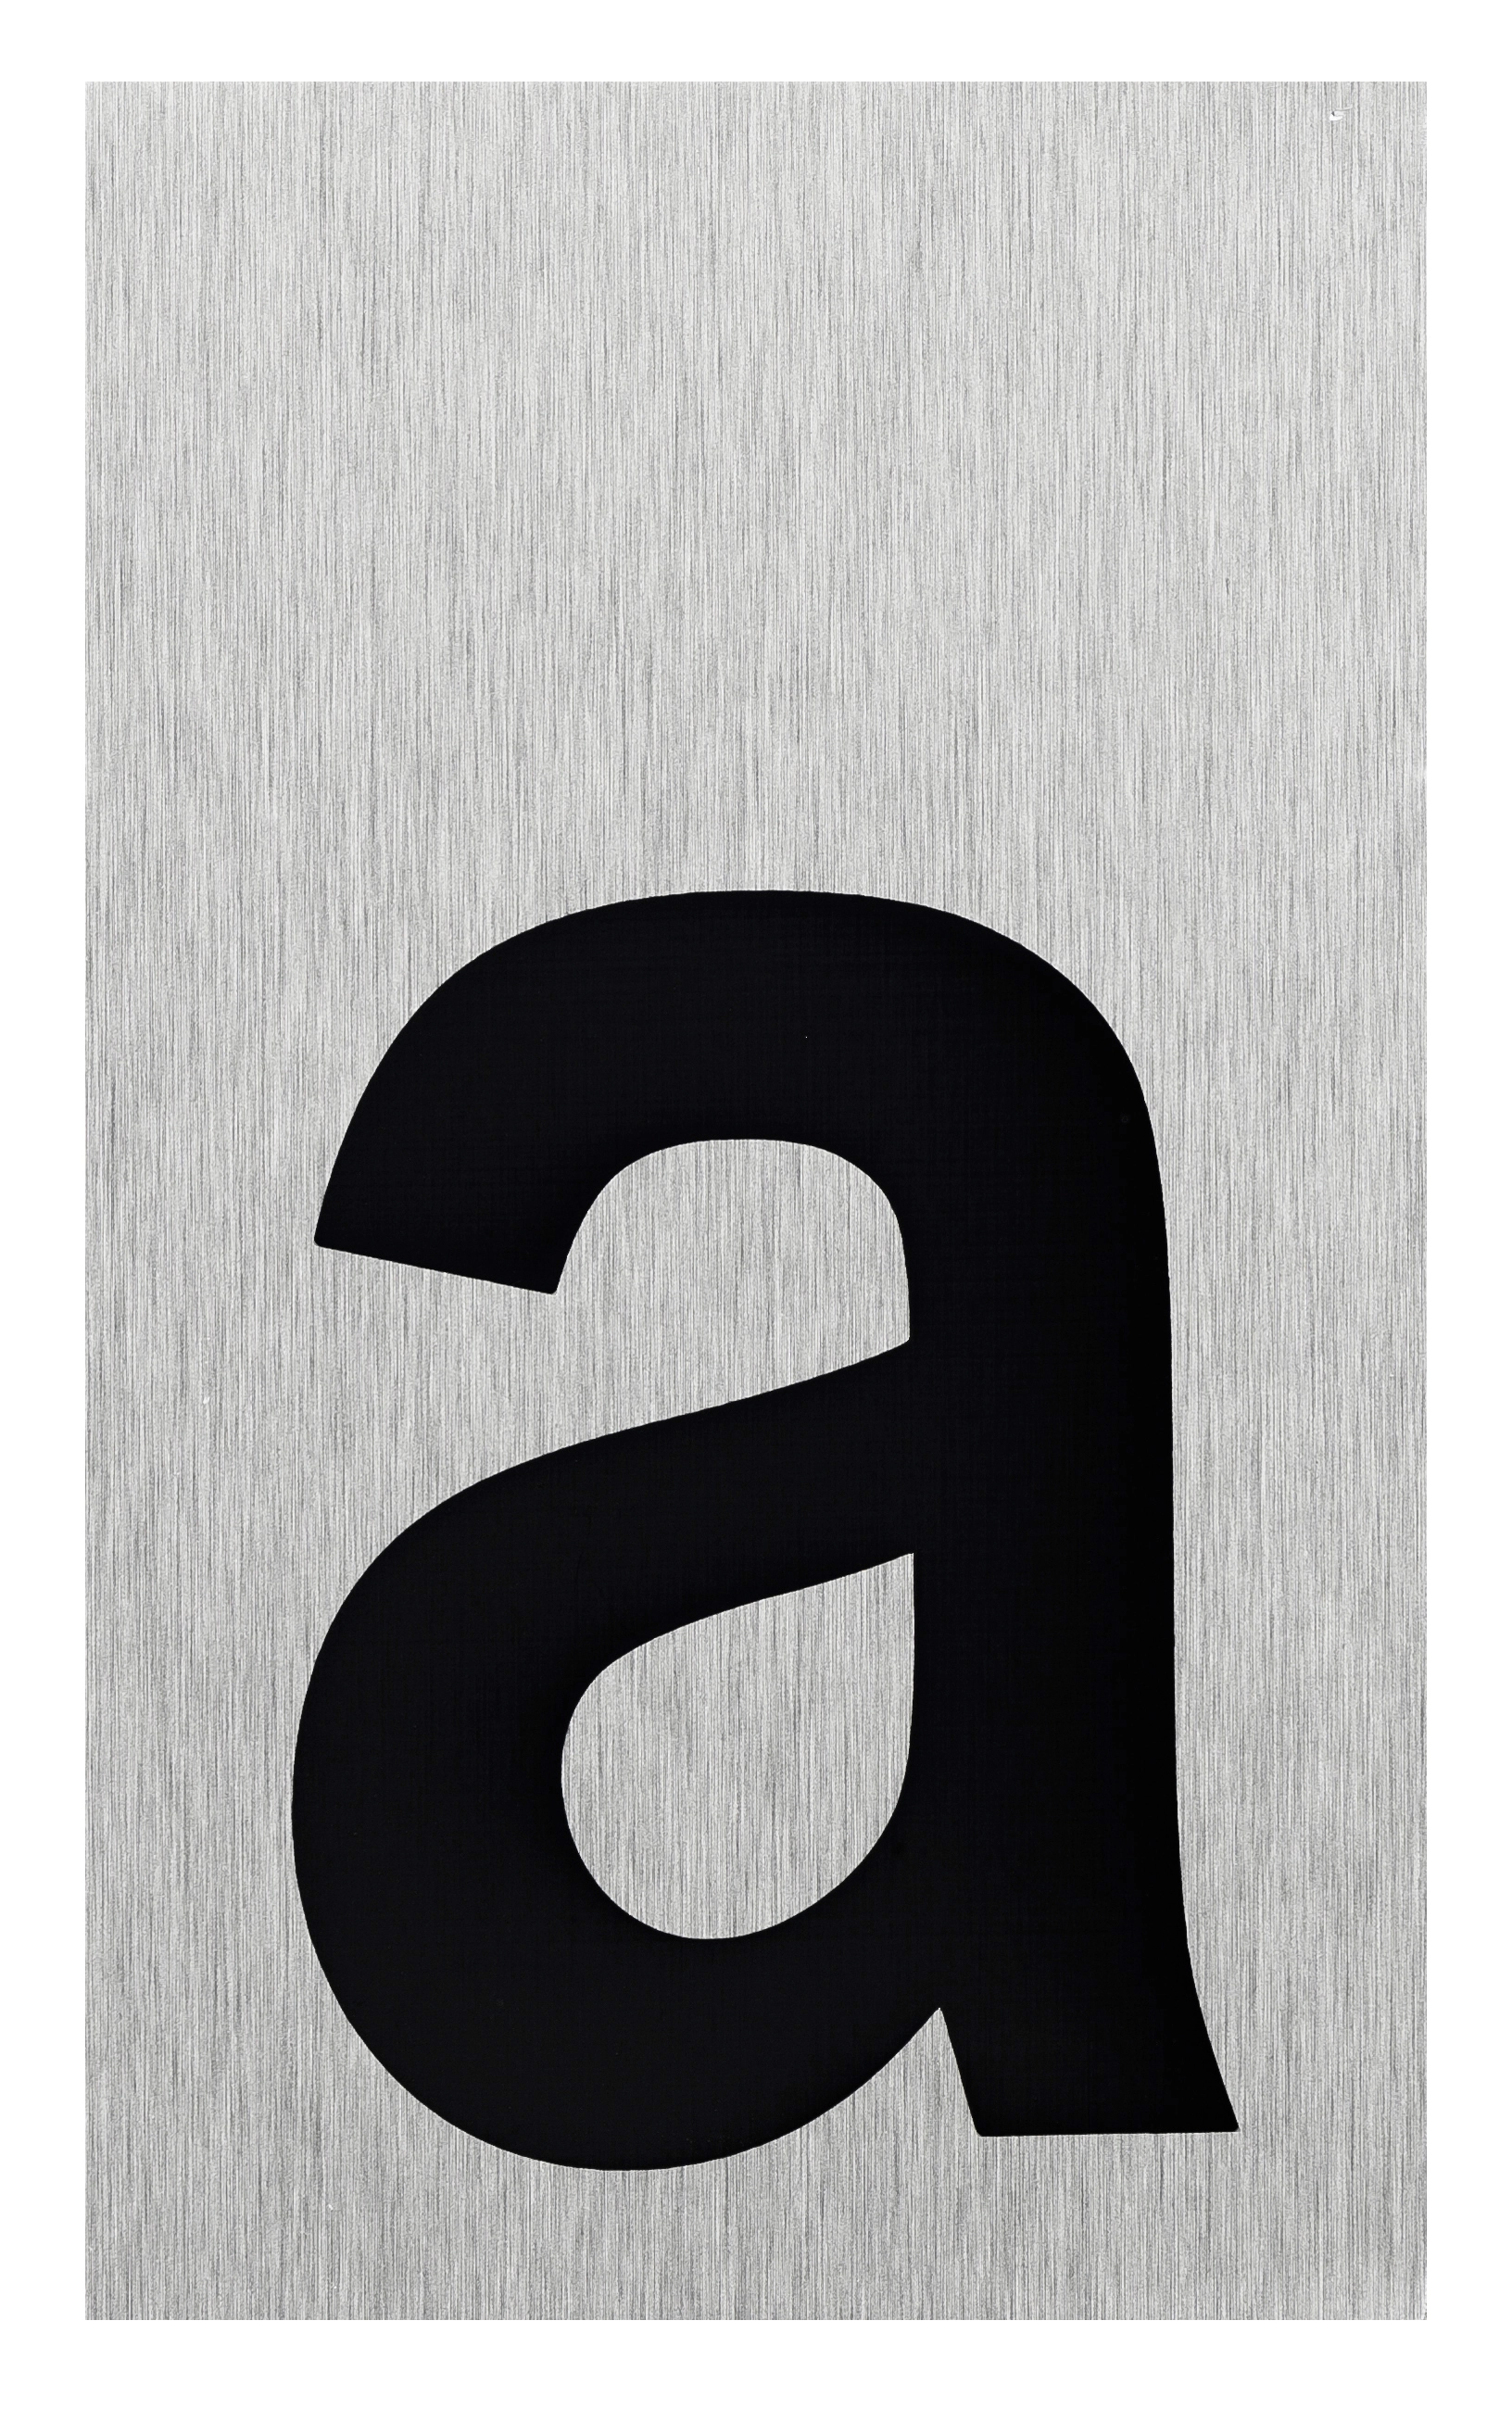 Buchstaben-Schild Aluminium a Selbstklebend kaufen bei OBI